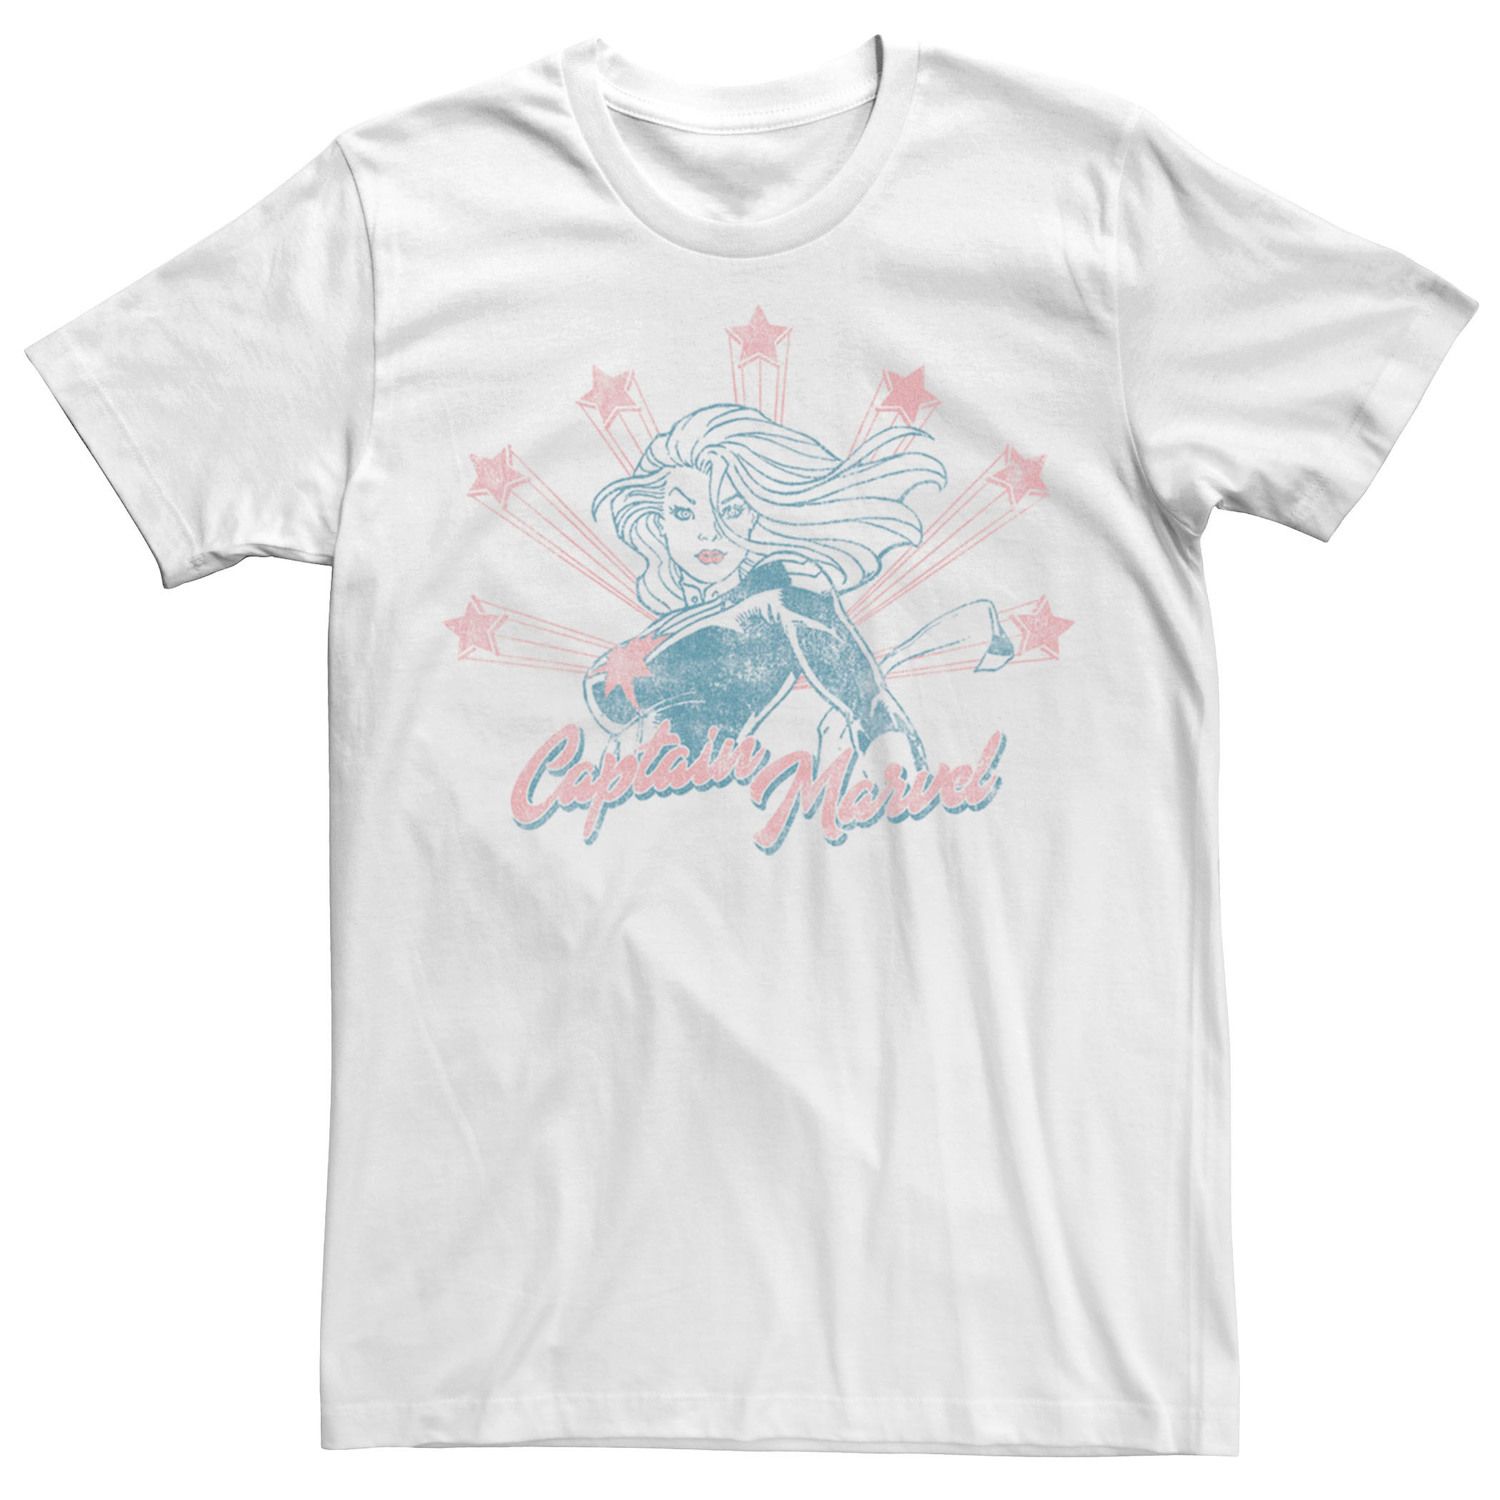 Мужская футболка с потертостями и портретом Captain Marvel Stars Licensed Character фото